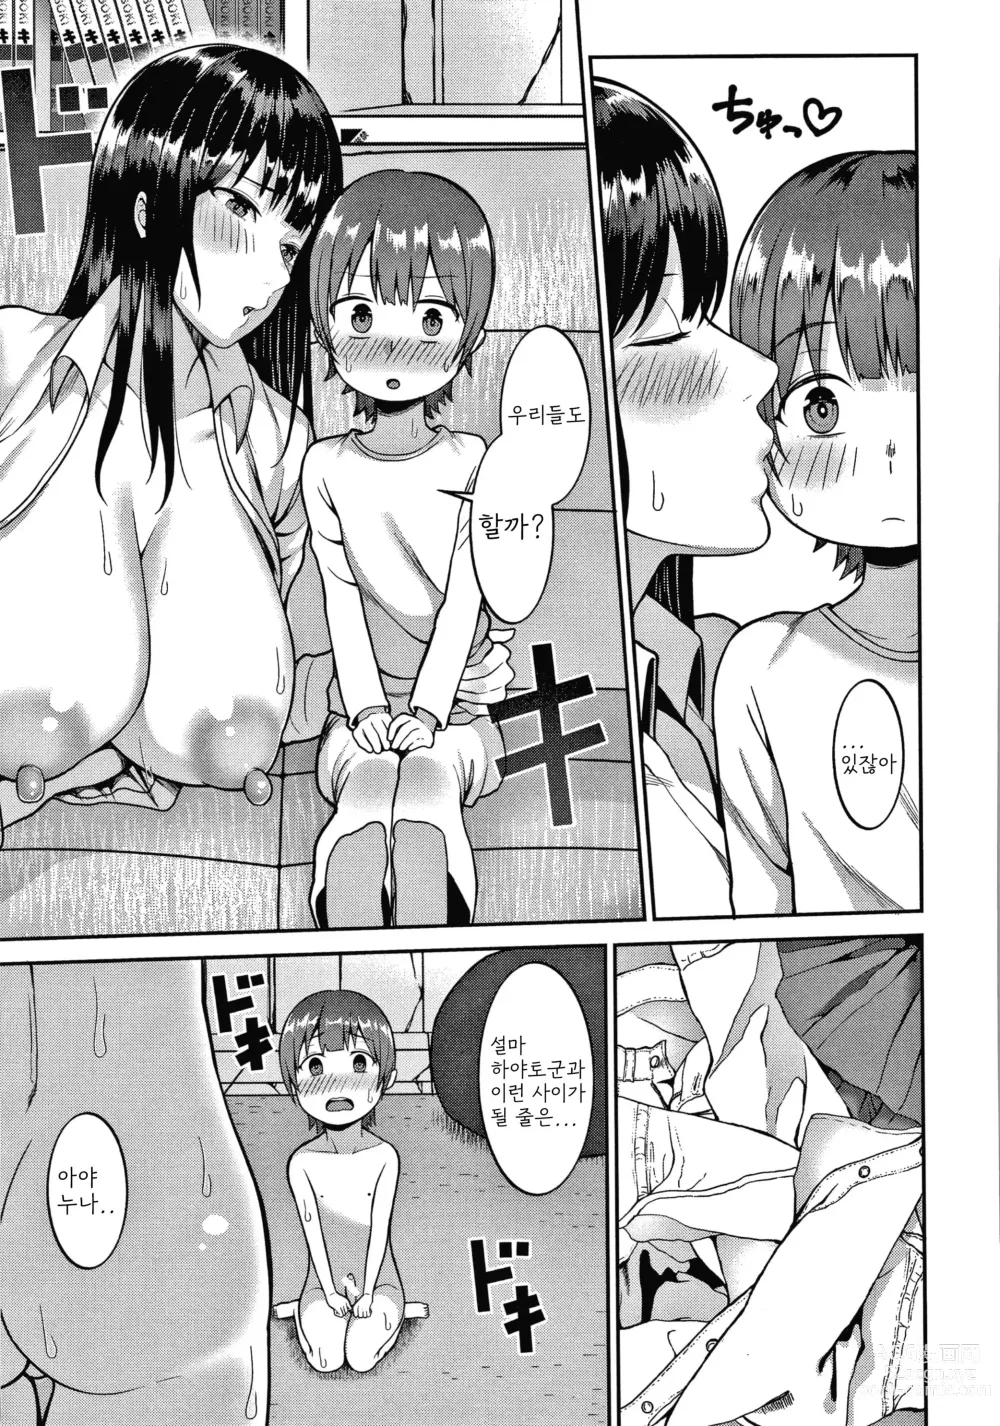 Page 33 of manga Himetsukichi Soudatsusen!